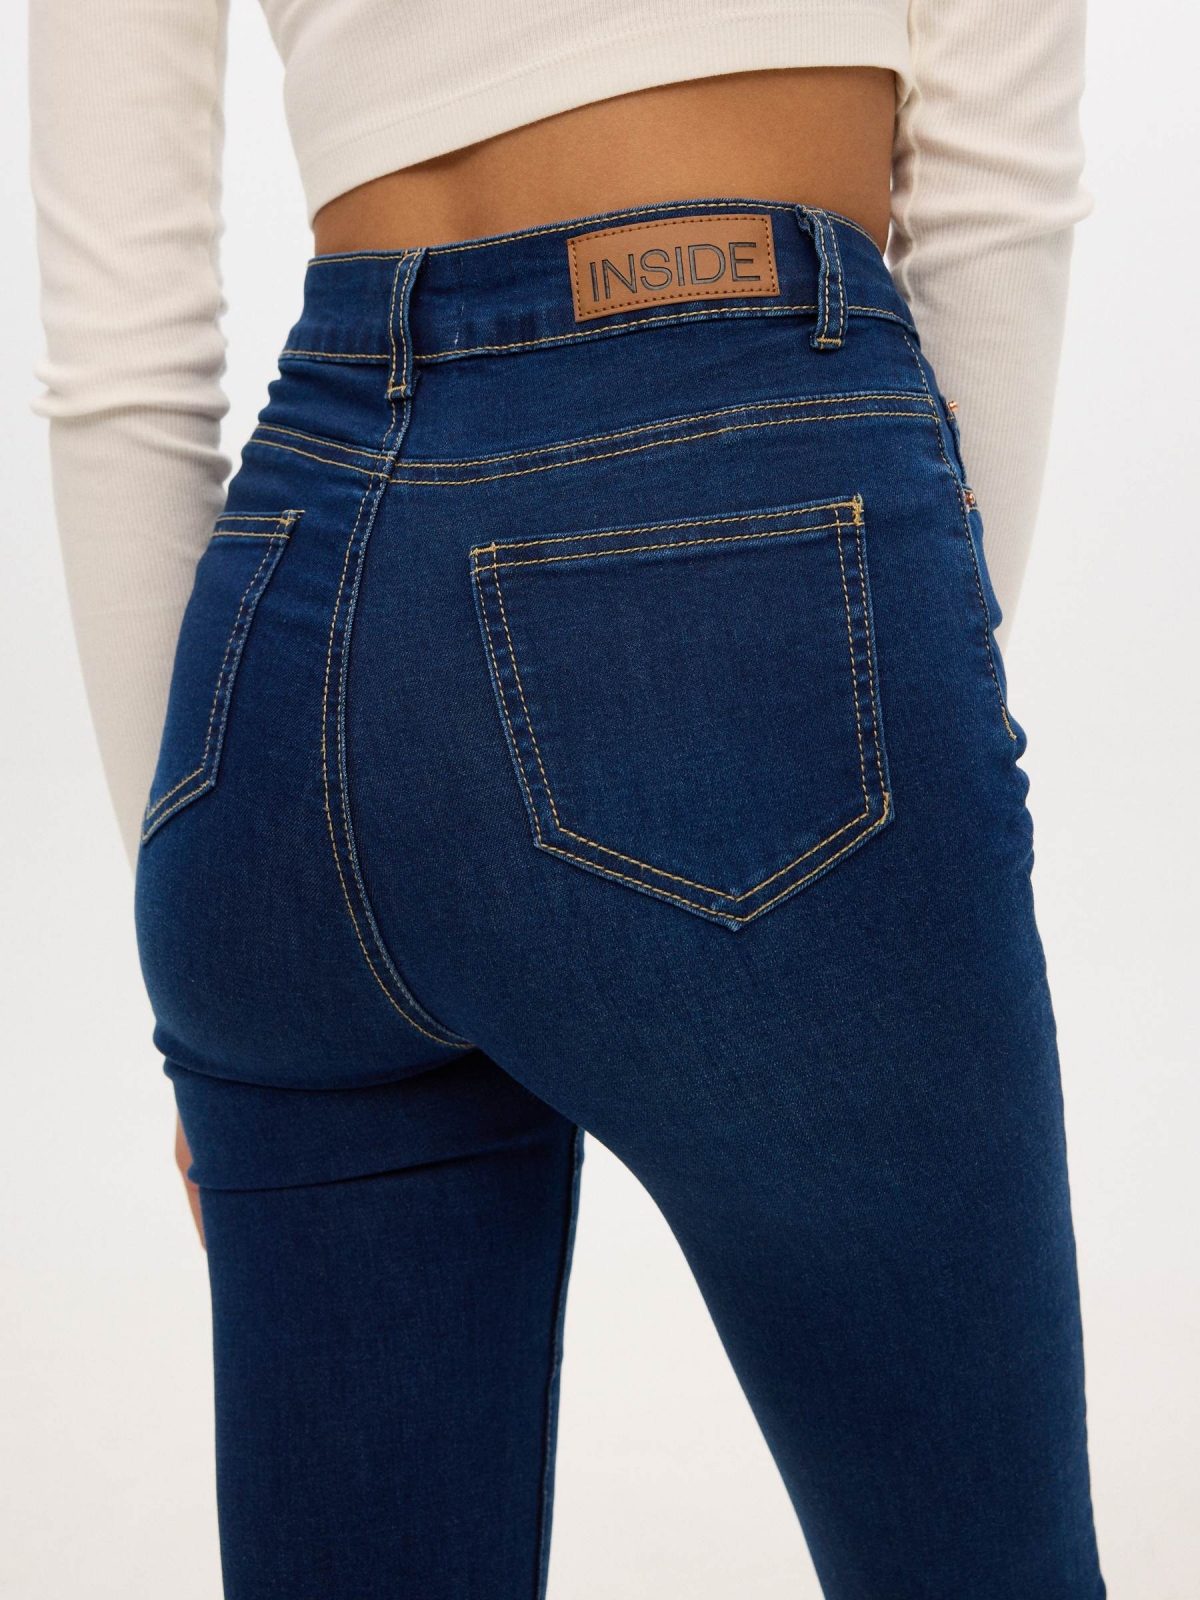 Jeans skinny high rise azul vista detalhe